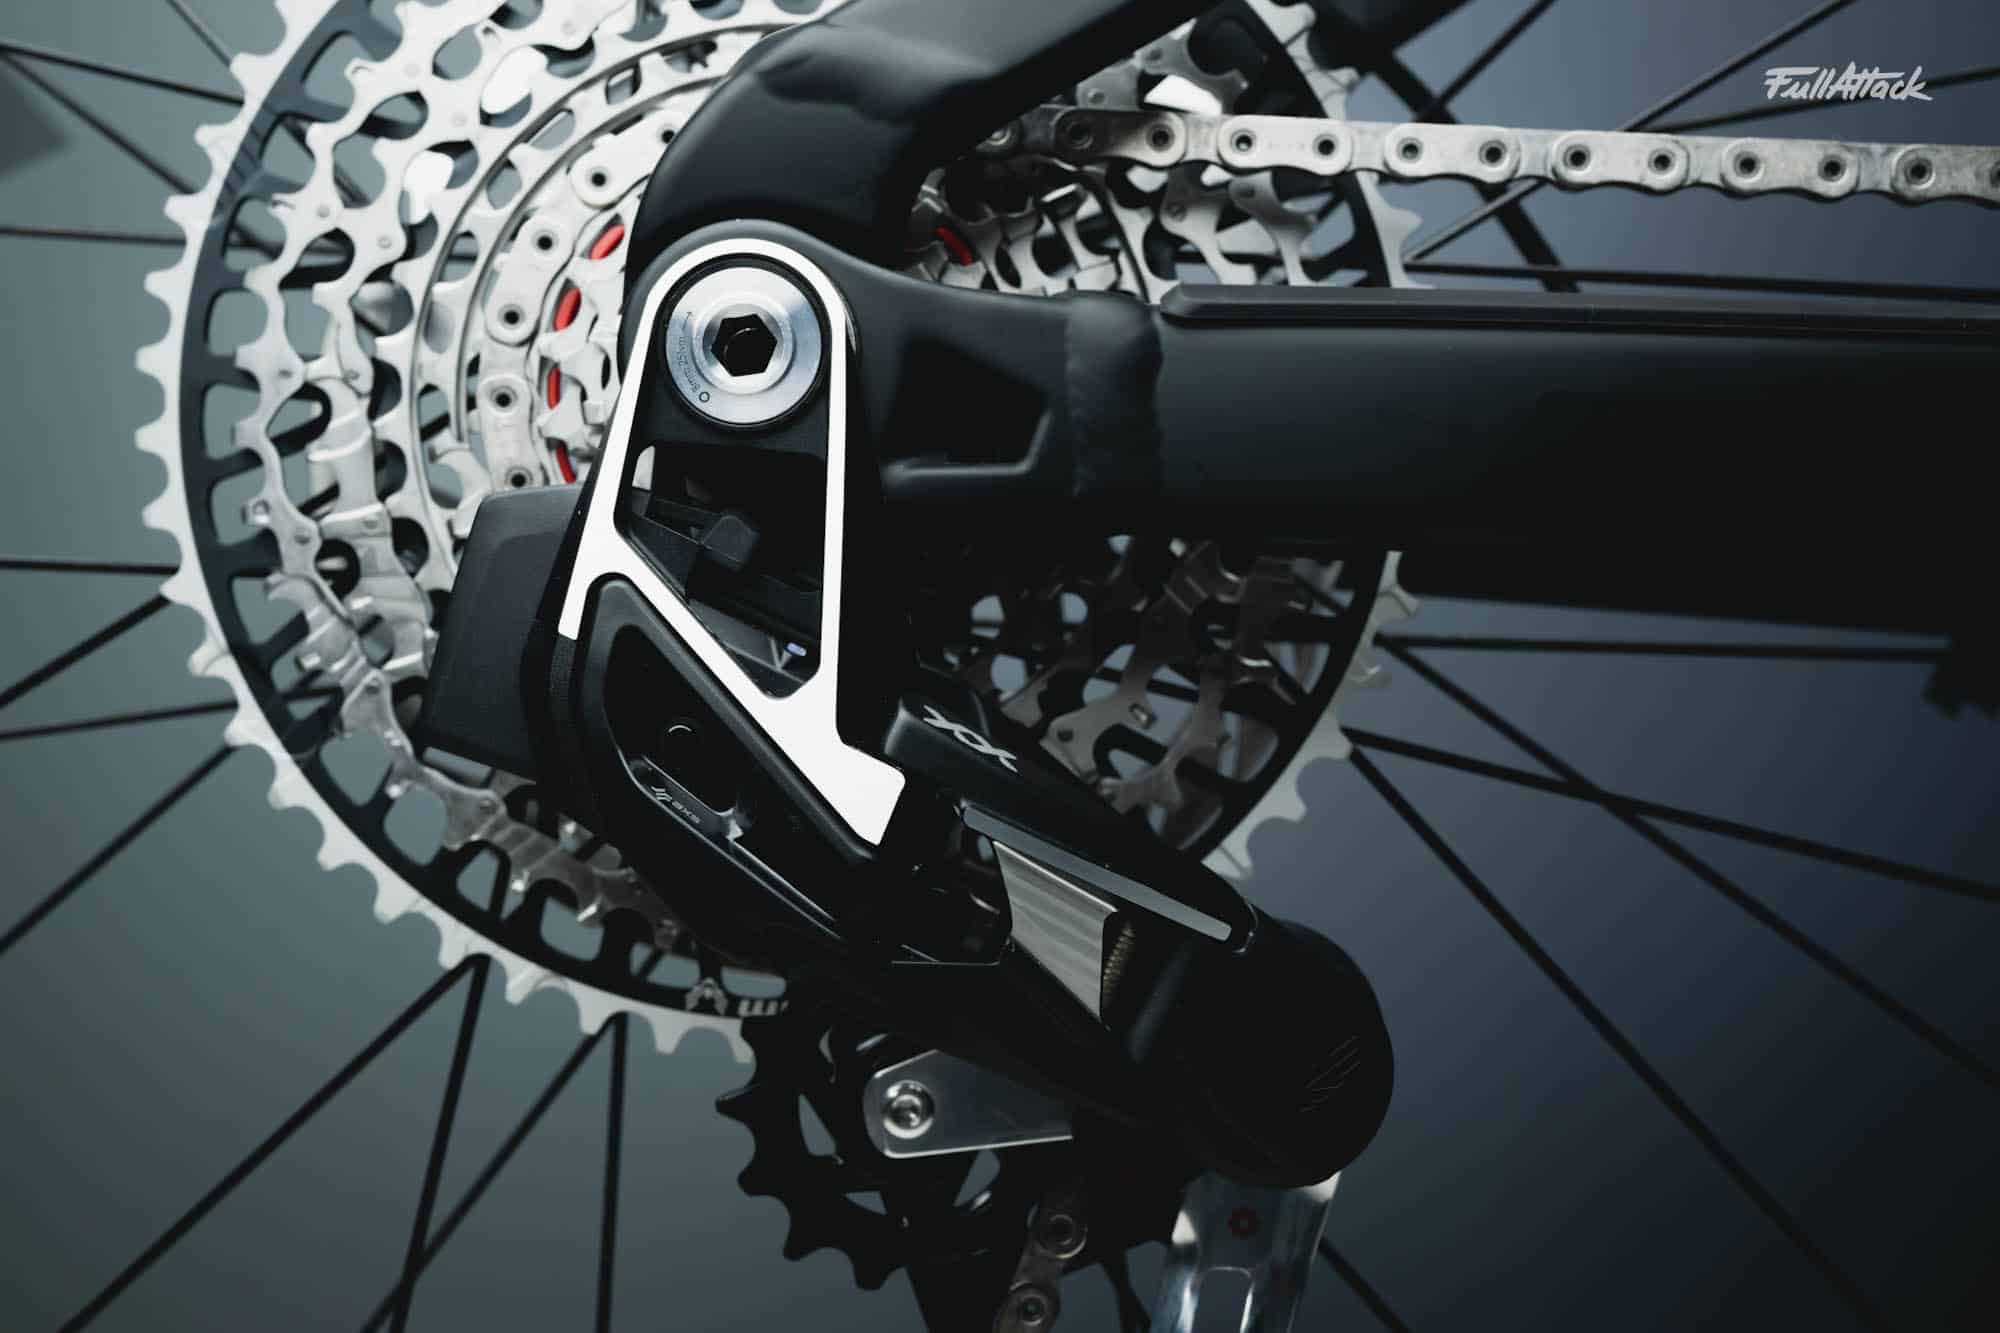 Frein vélo,Kit de Conversion de frein à disque arrière, pour vtt,  accessoires de bicyclette - Type Universal Brake